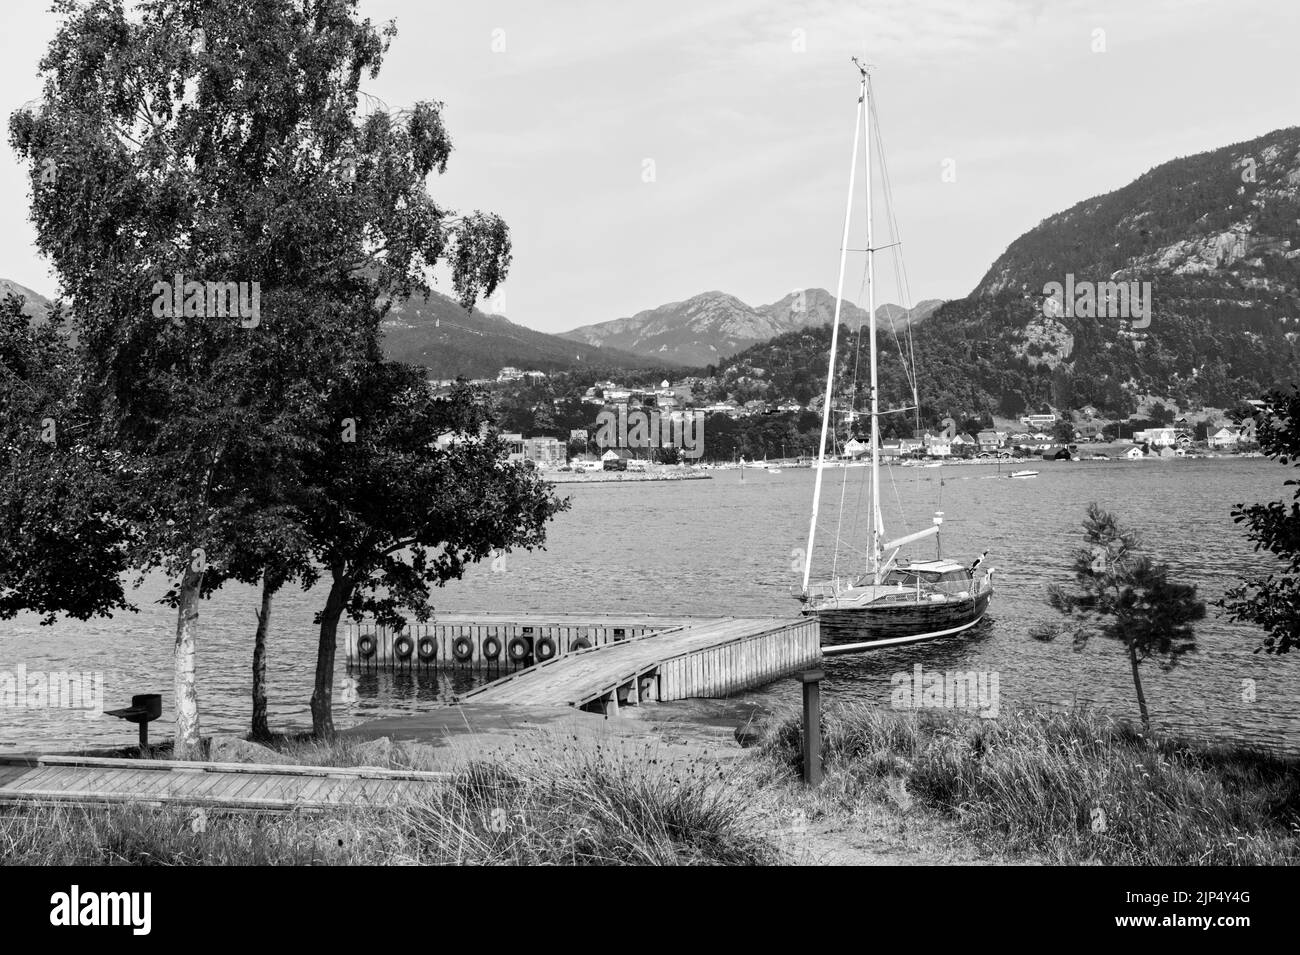 Bateau à voile attaché près de la ville de Jørpeland en Norvège le panorama de Jørpelandsholmen Klungholmen en noir et blanc Banque D'Images